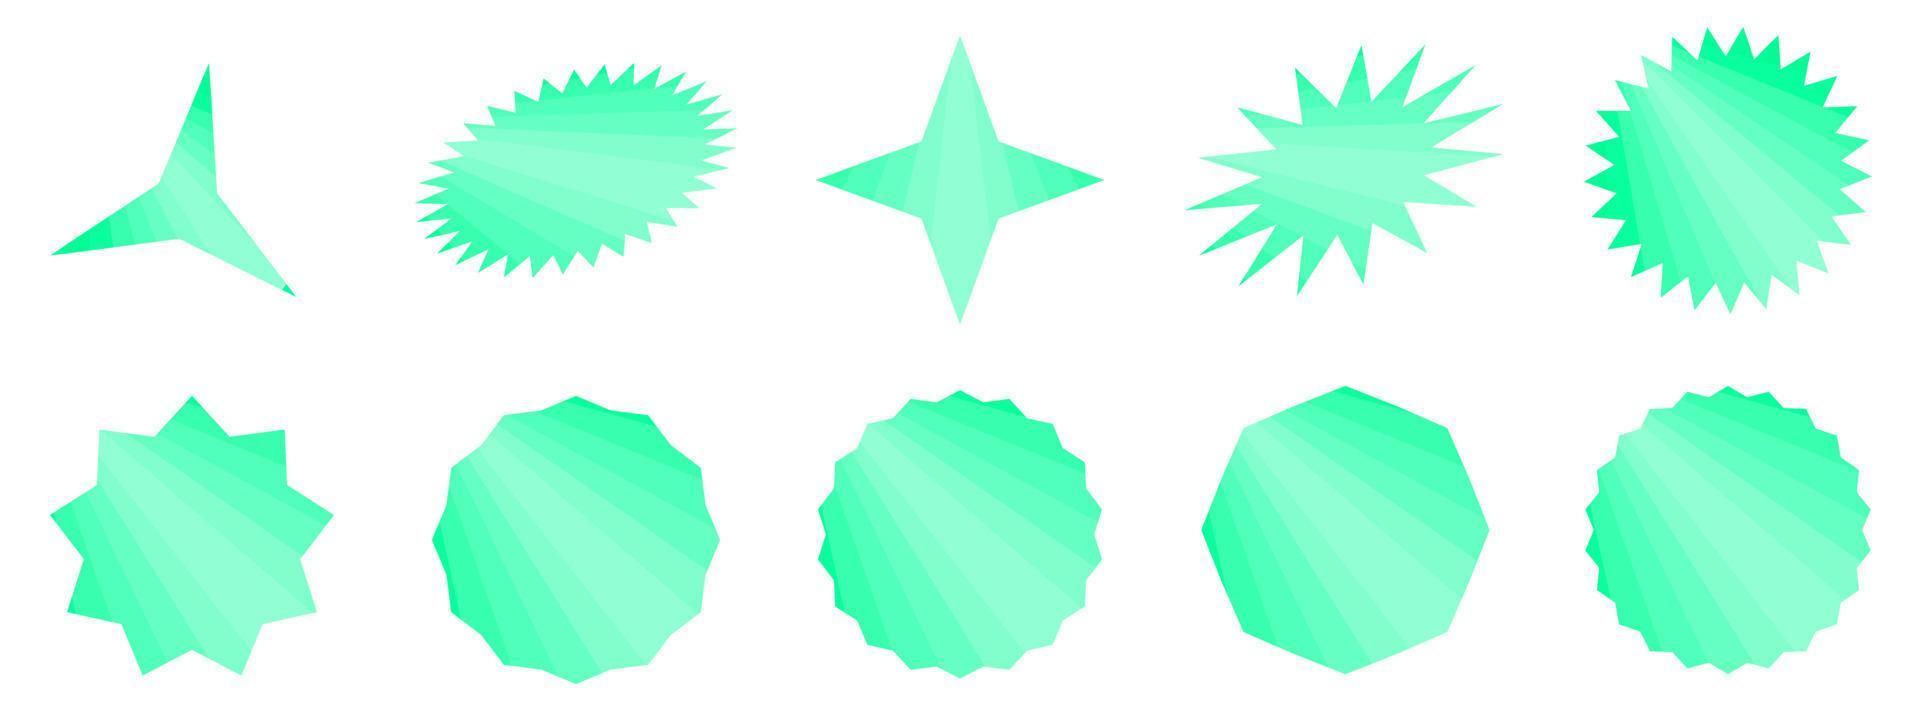 uppsättning grön starburst, abstrakt bakgrund textur mönster vektorillustration vektor